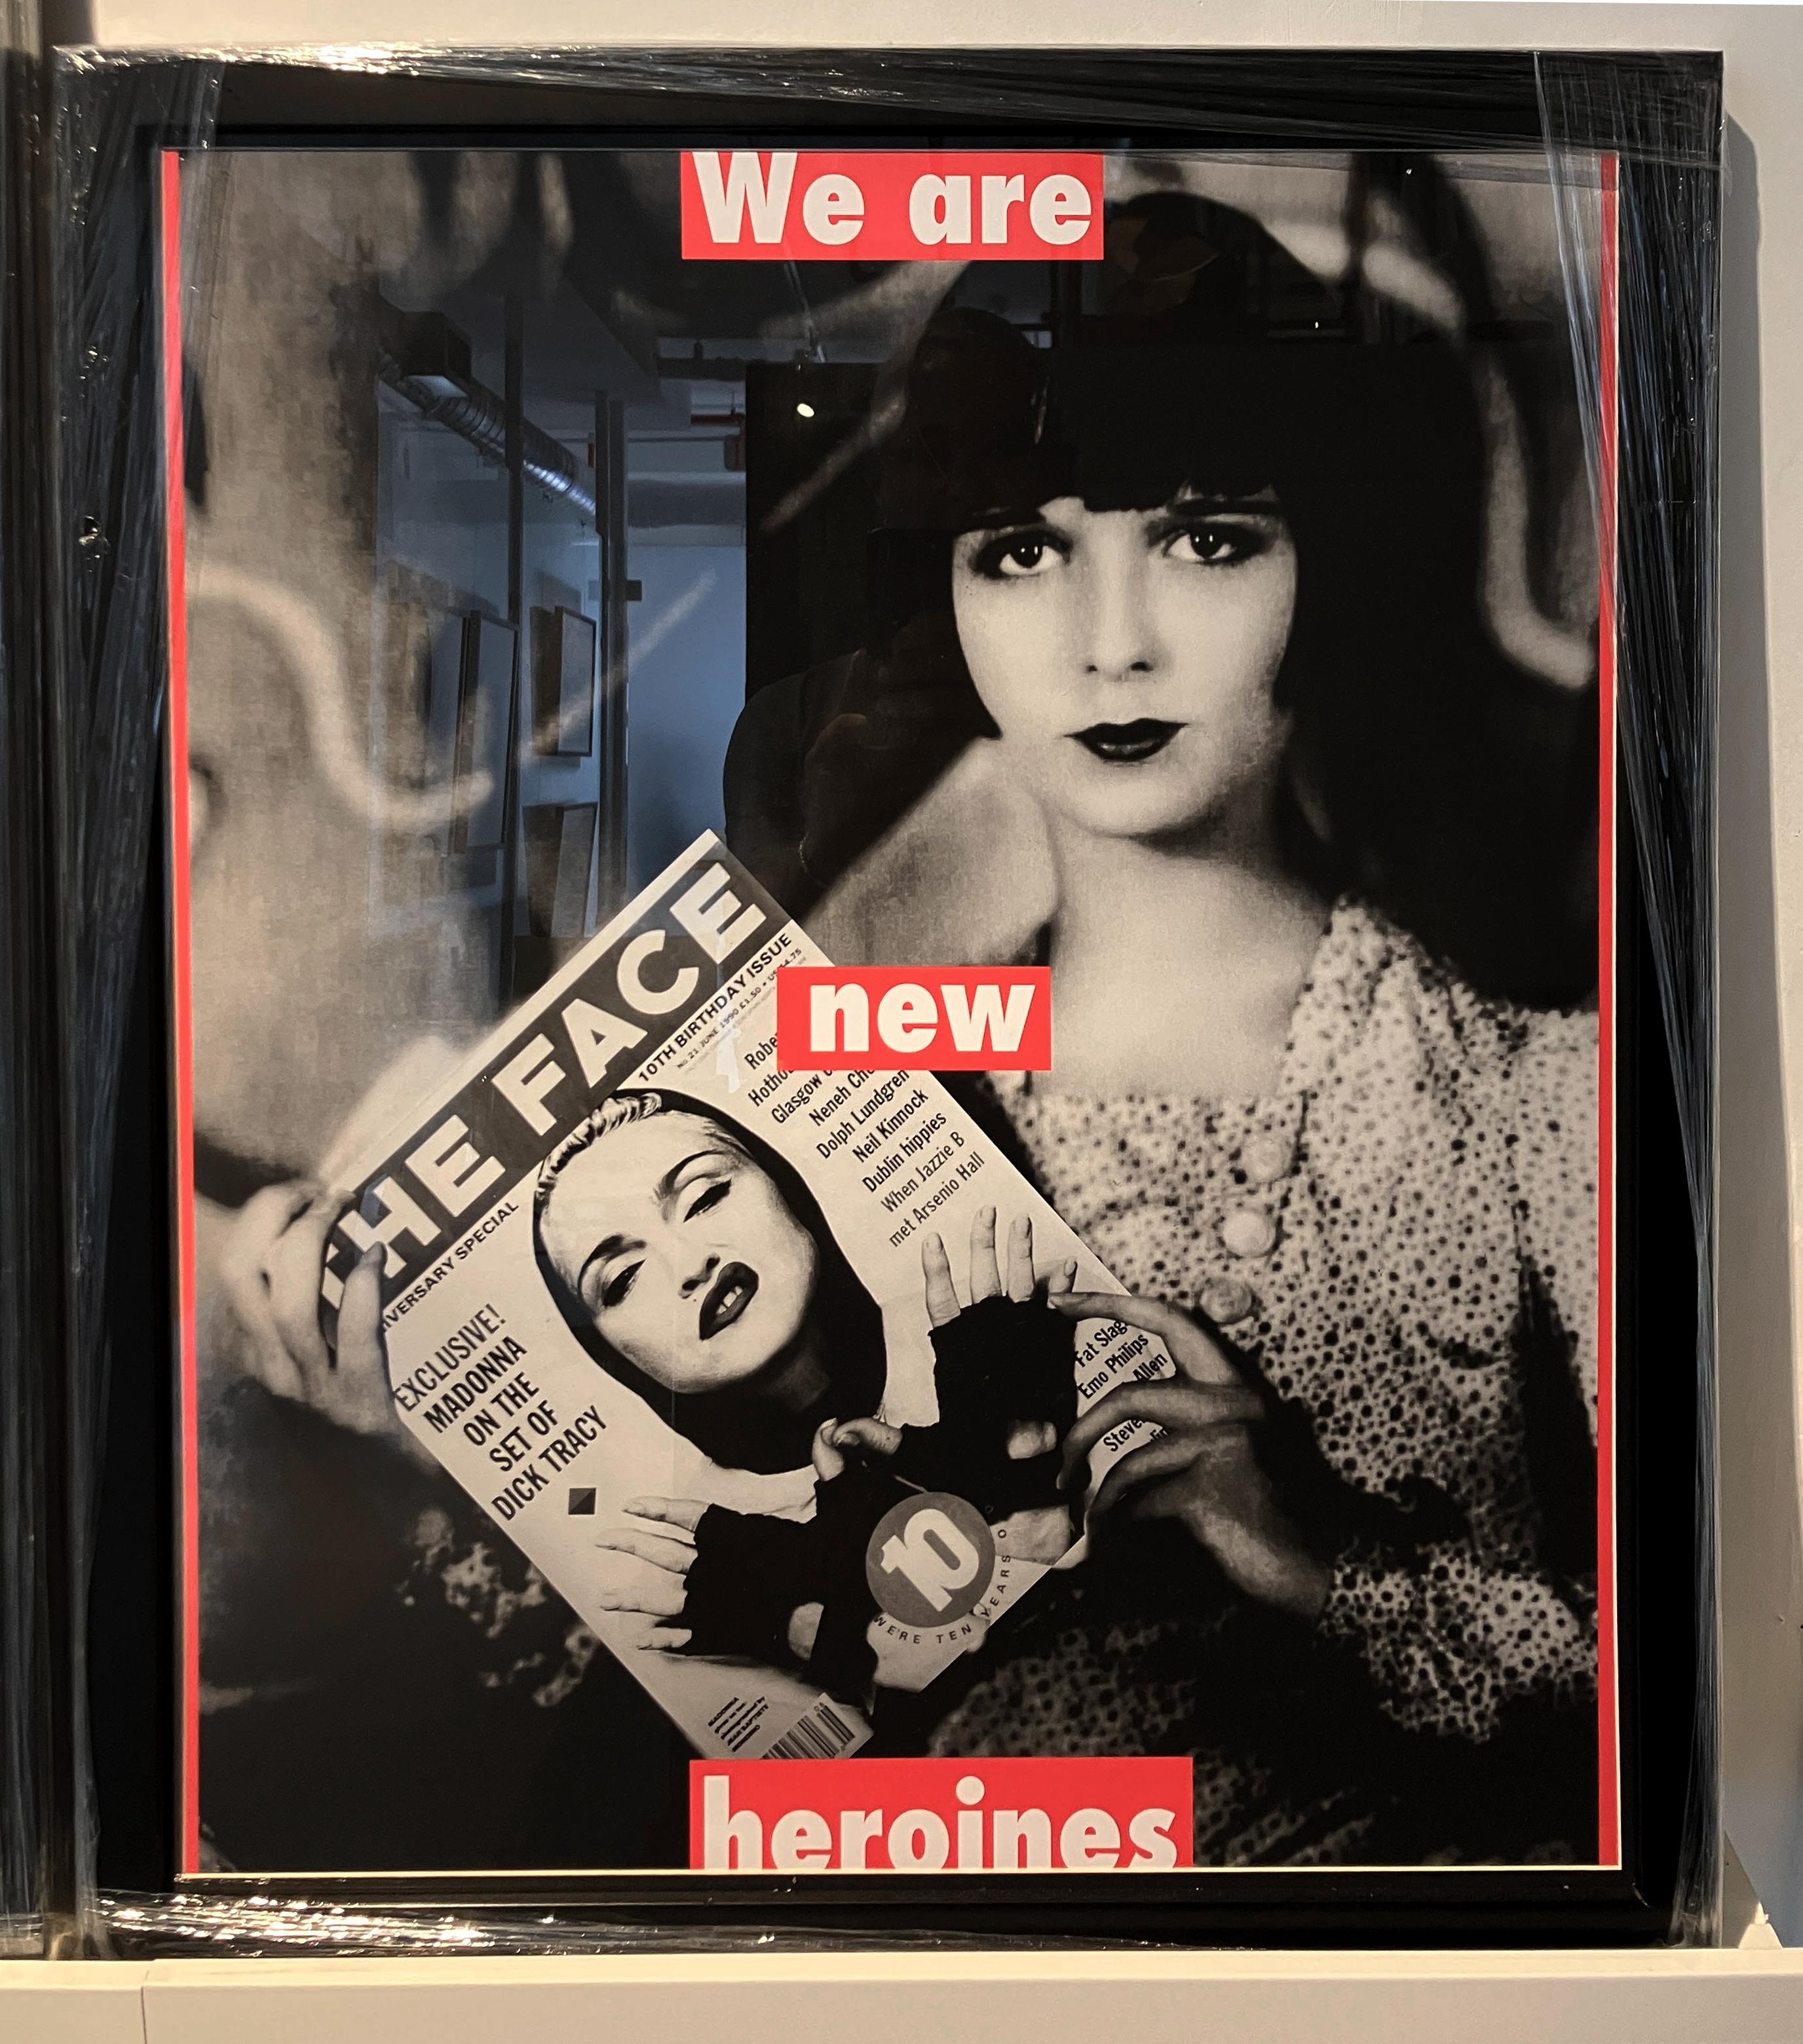 Wir sind neue Heldinnen, Hommage an Louise Brooks und Barbara Kruger, 2013
Archivierungs-Pigmentdruck 
24 in. H x 20 in. W. 
Auflage von 5
Schwarzer Holzrahmen

Das Projekt Dis-enchanted,
Was wäre, wenn sich die Realität vor unseren Augen auflösen